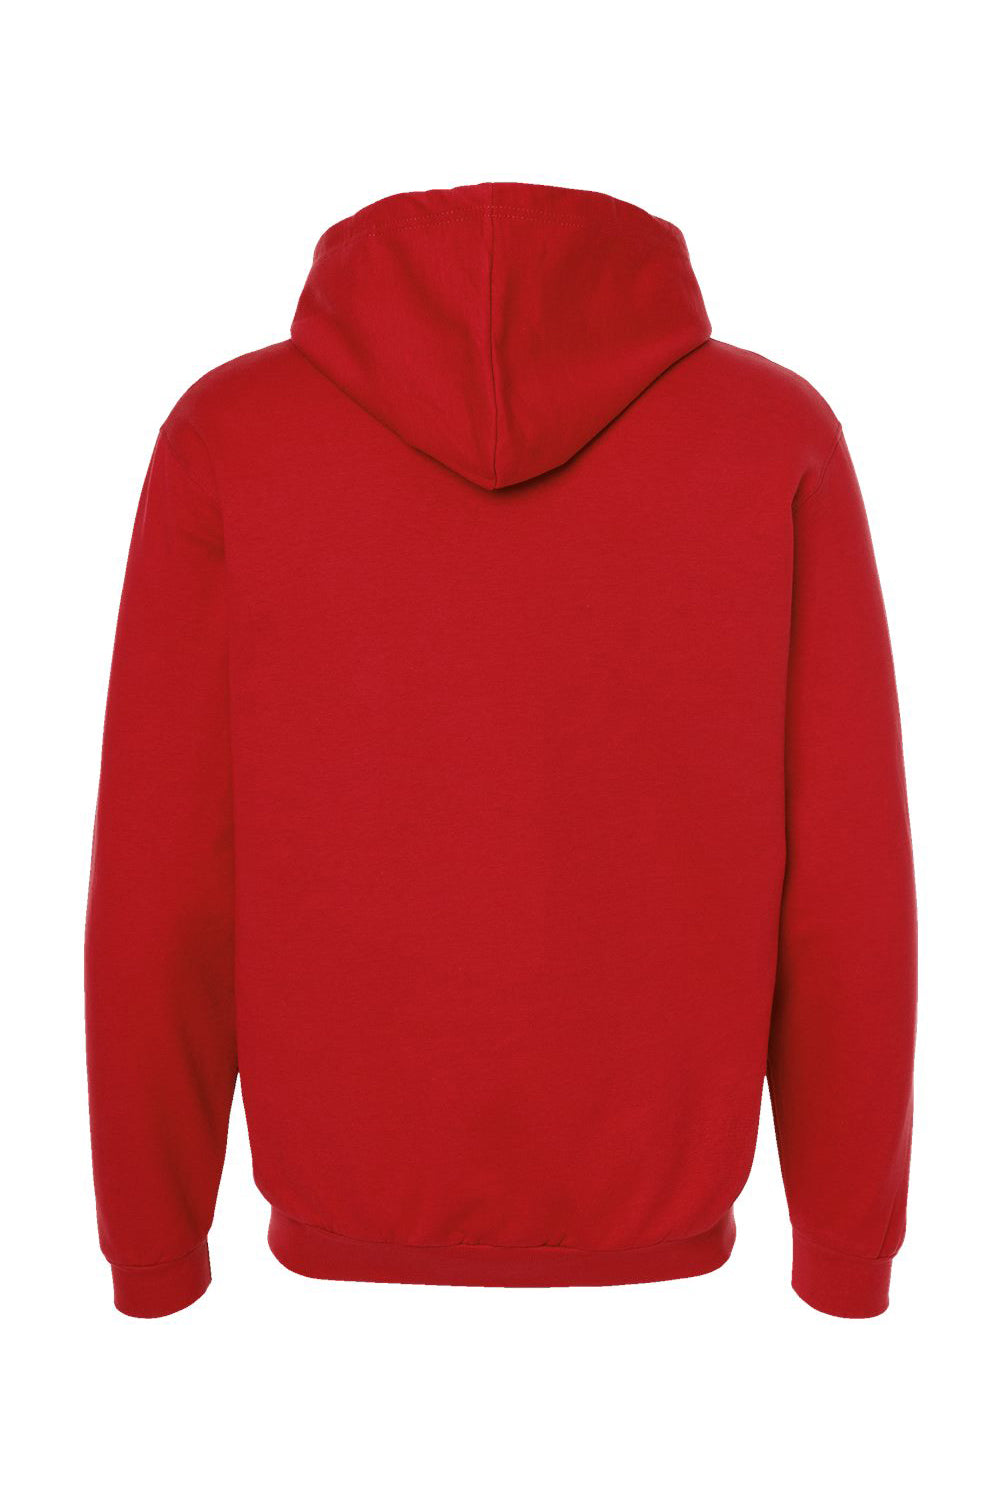 Tultex 331 Mens Full Zip Hooded Sweatshirt Hoodie Red Flat Back